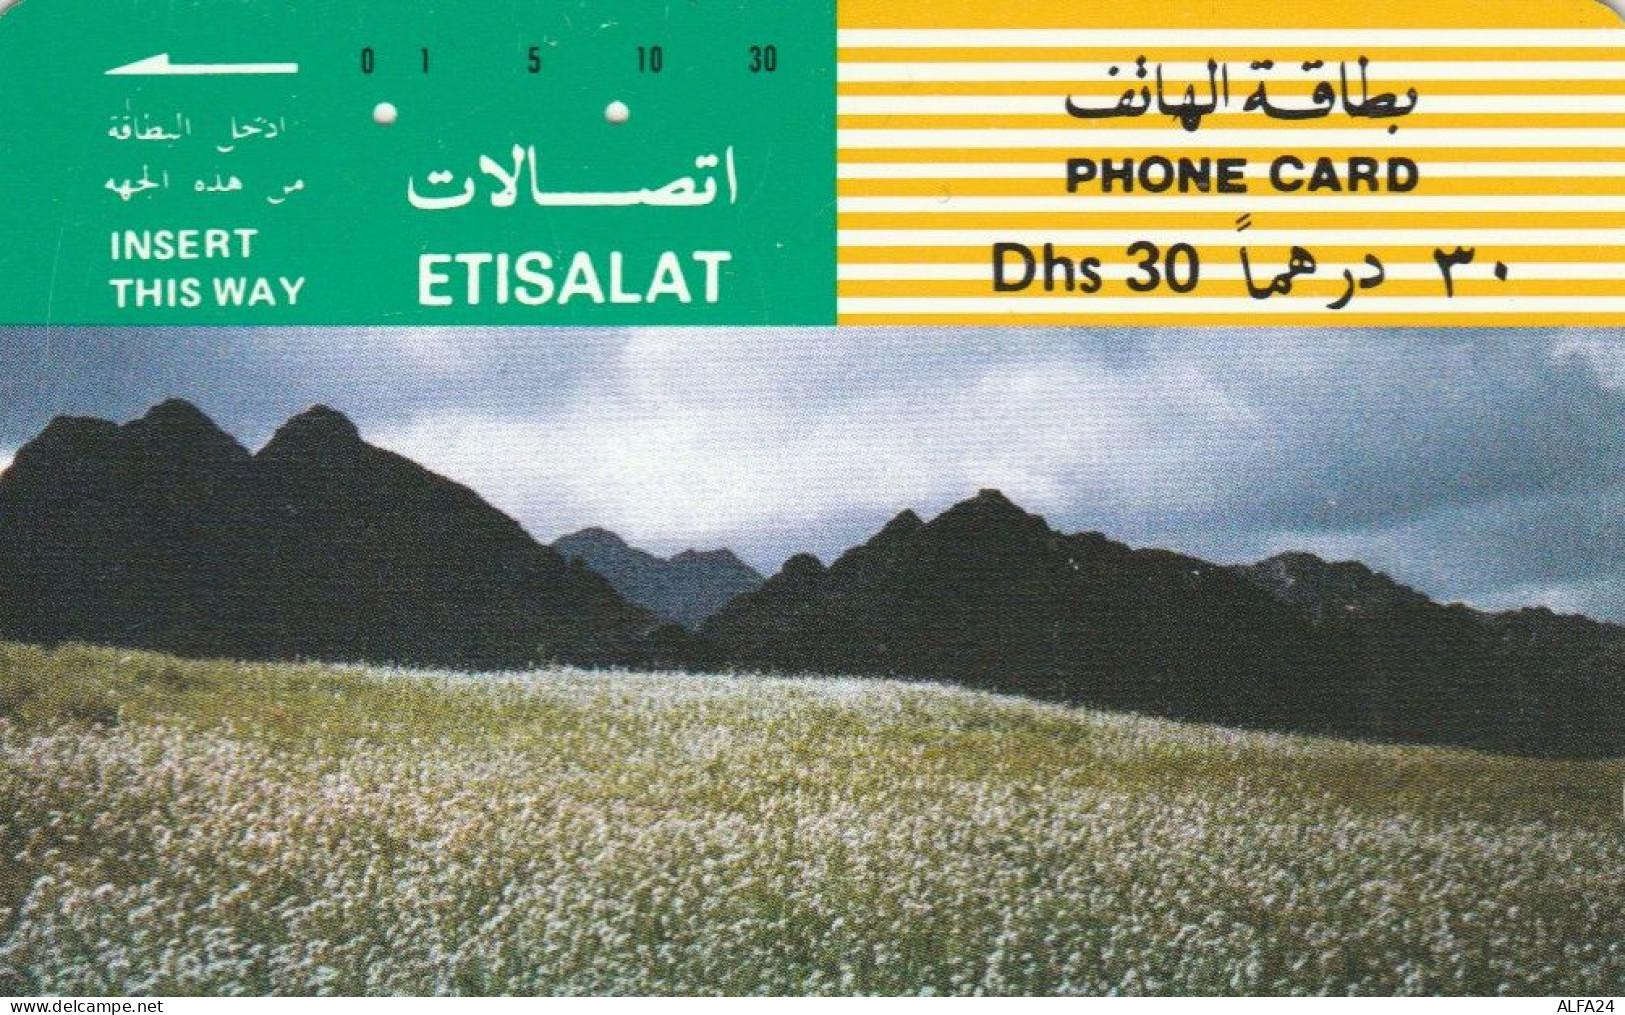 PHONE CARD EMIRATI ARABI (E53.16.2 - Ver. Arab. Emirate